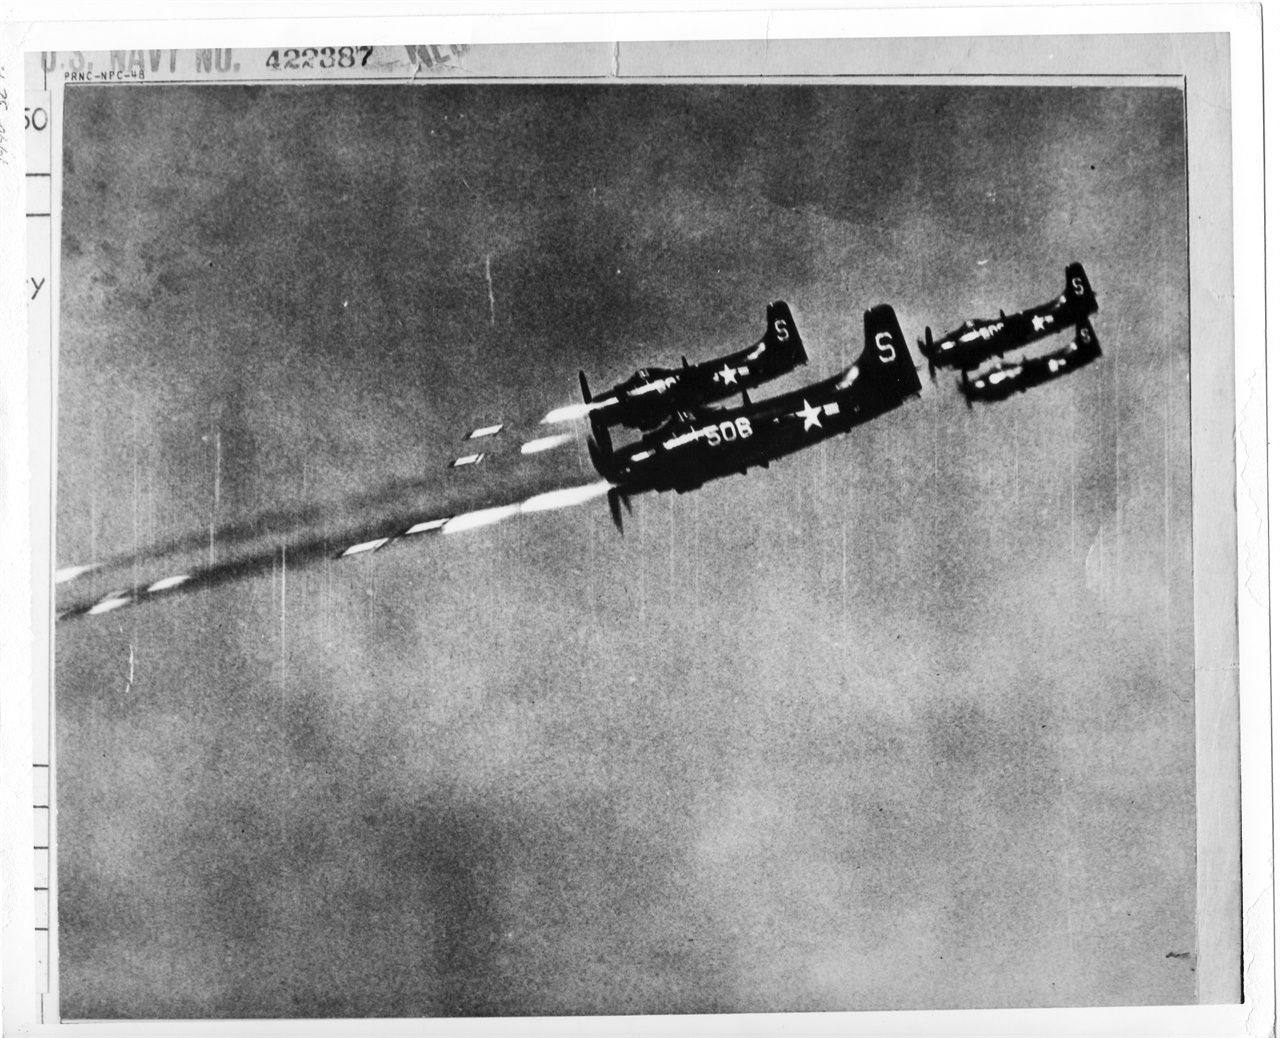 1950. 10. 24. 미 항공모함에서 출격한 미 해군 전투기가 북한군 진지를 향해 5인치 로켓포를 발사하고 있다. 